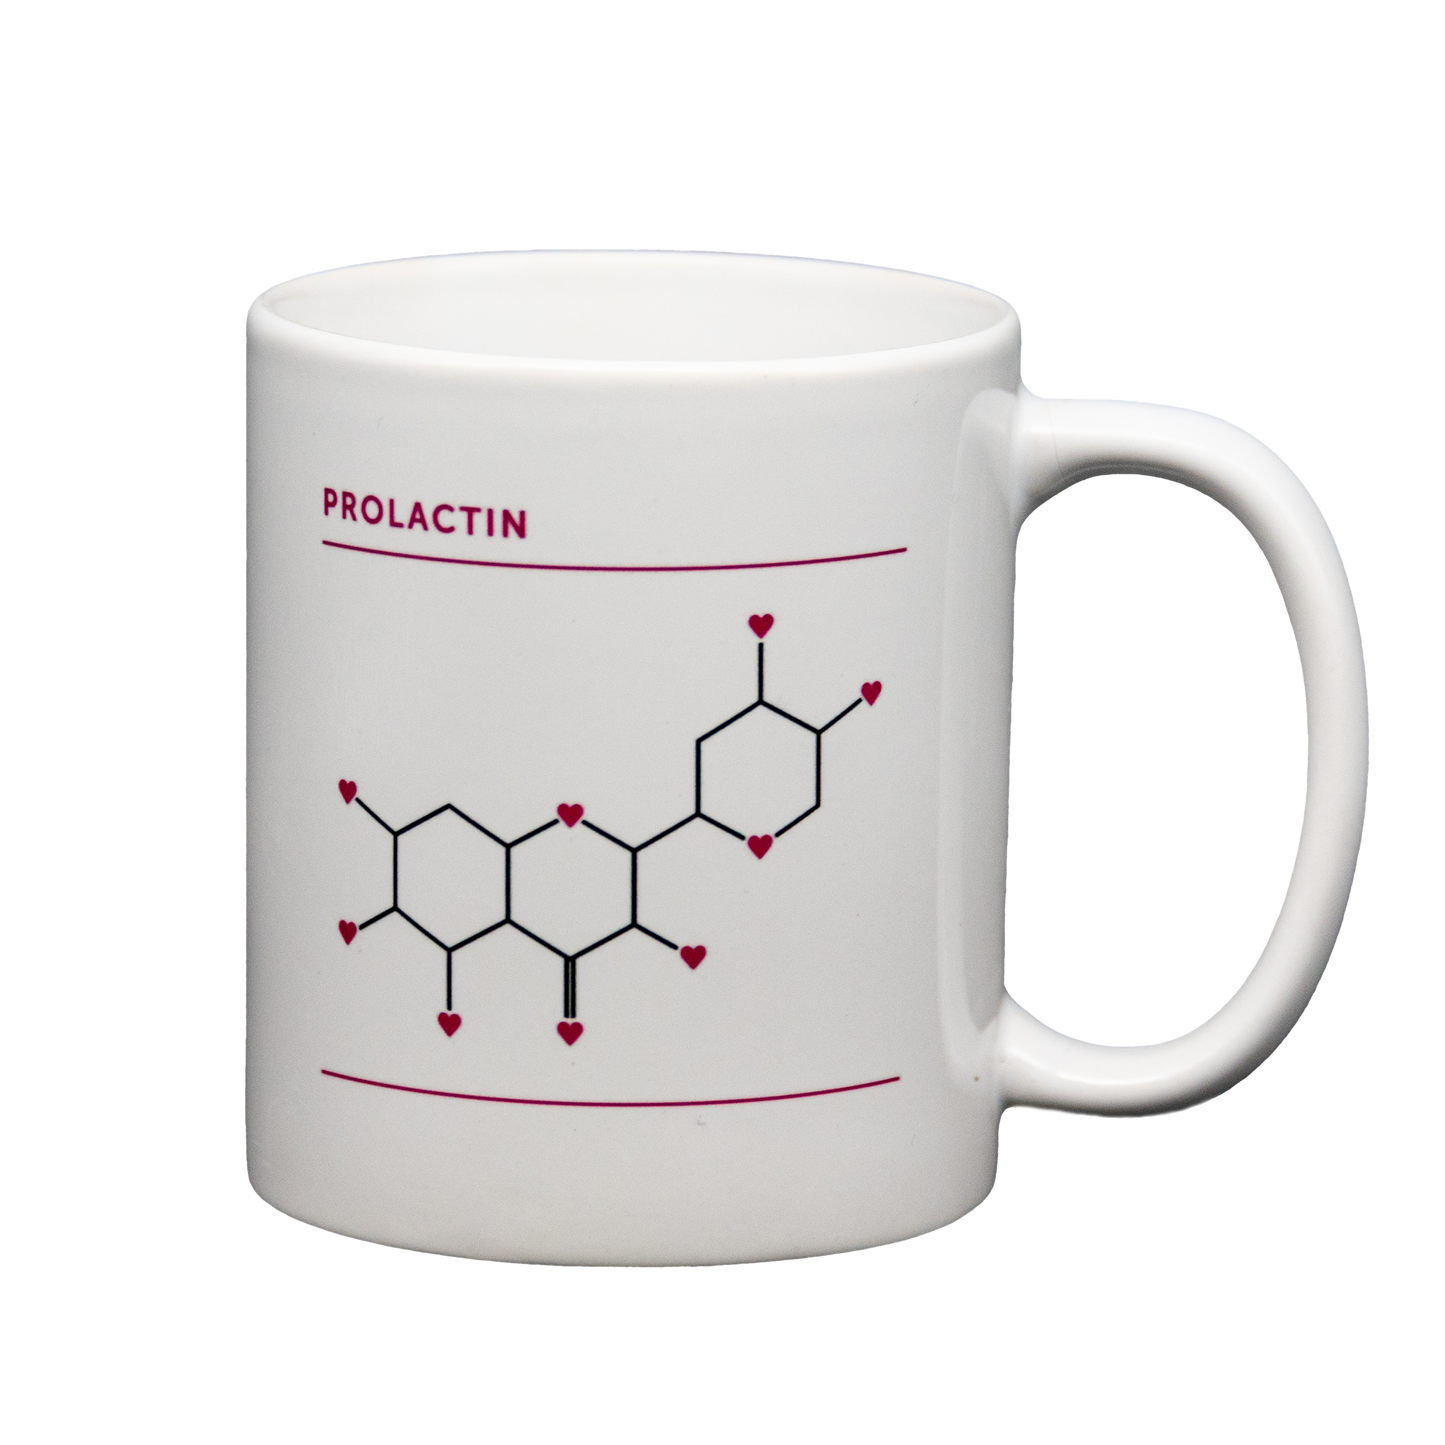 Prolactin Mug